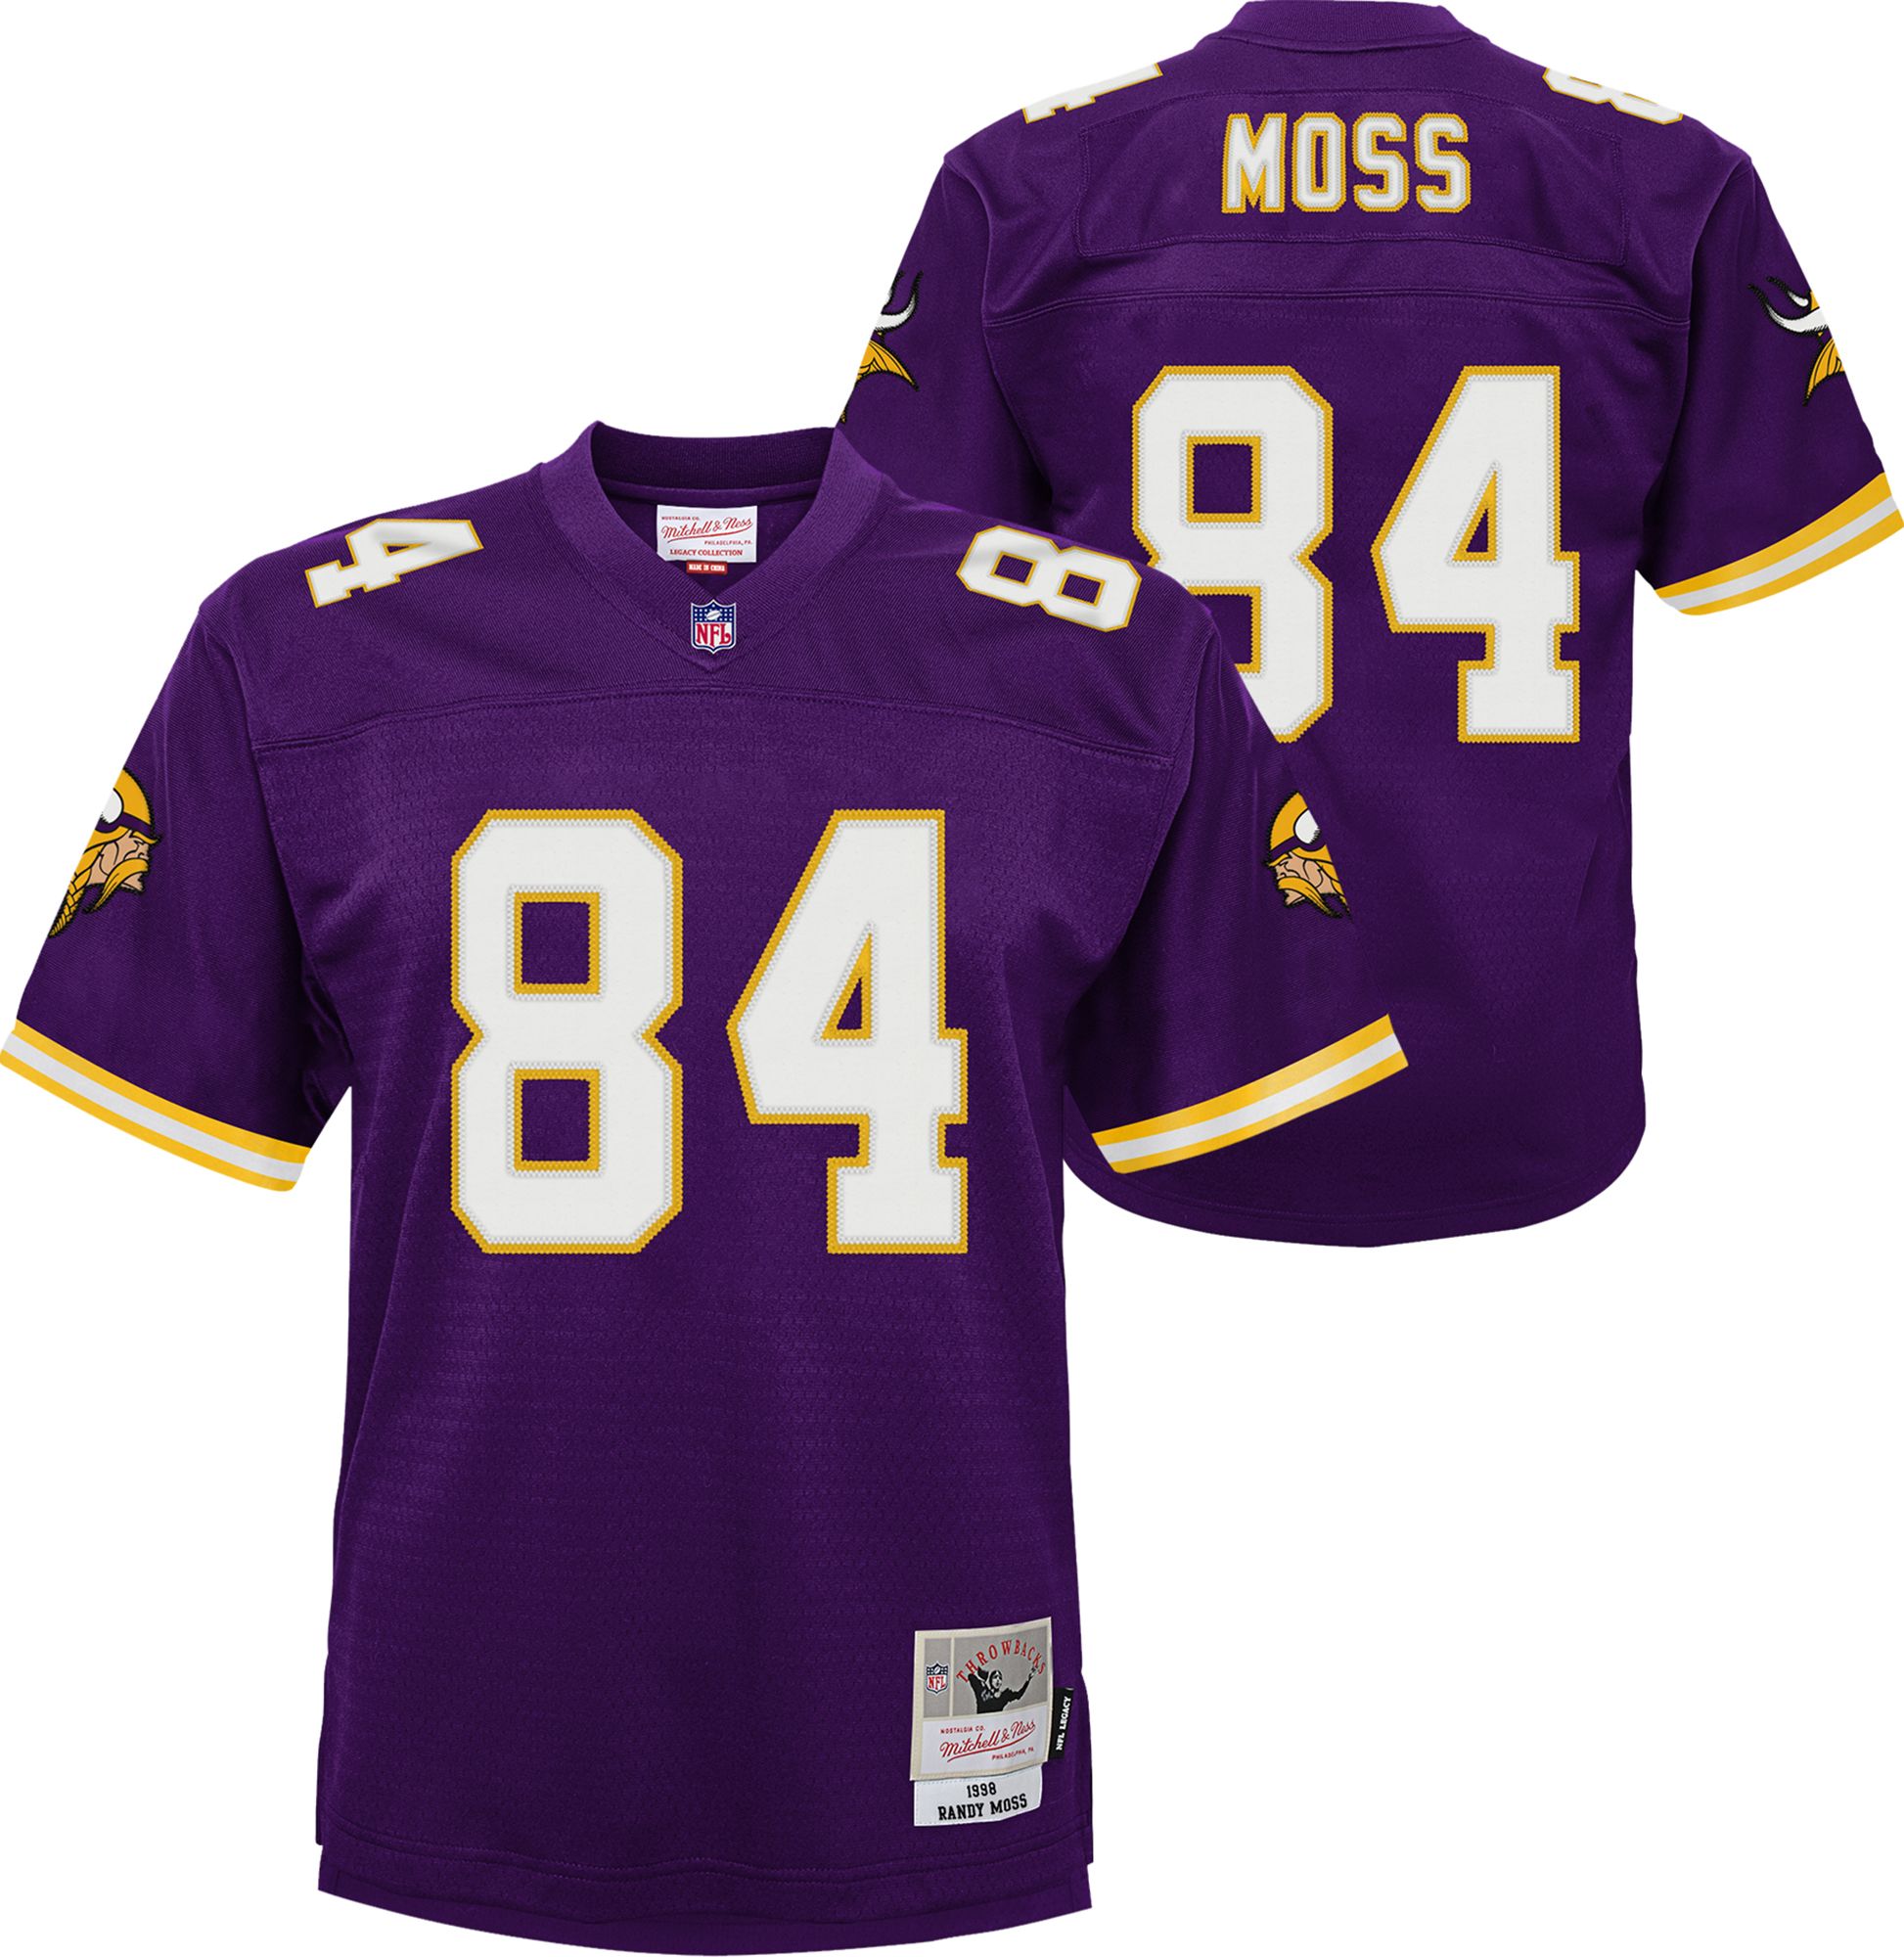 Randy Moss Vikings jersey